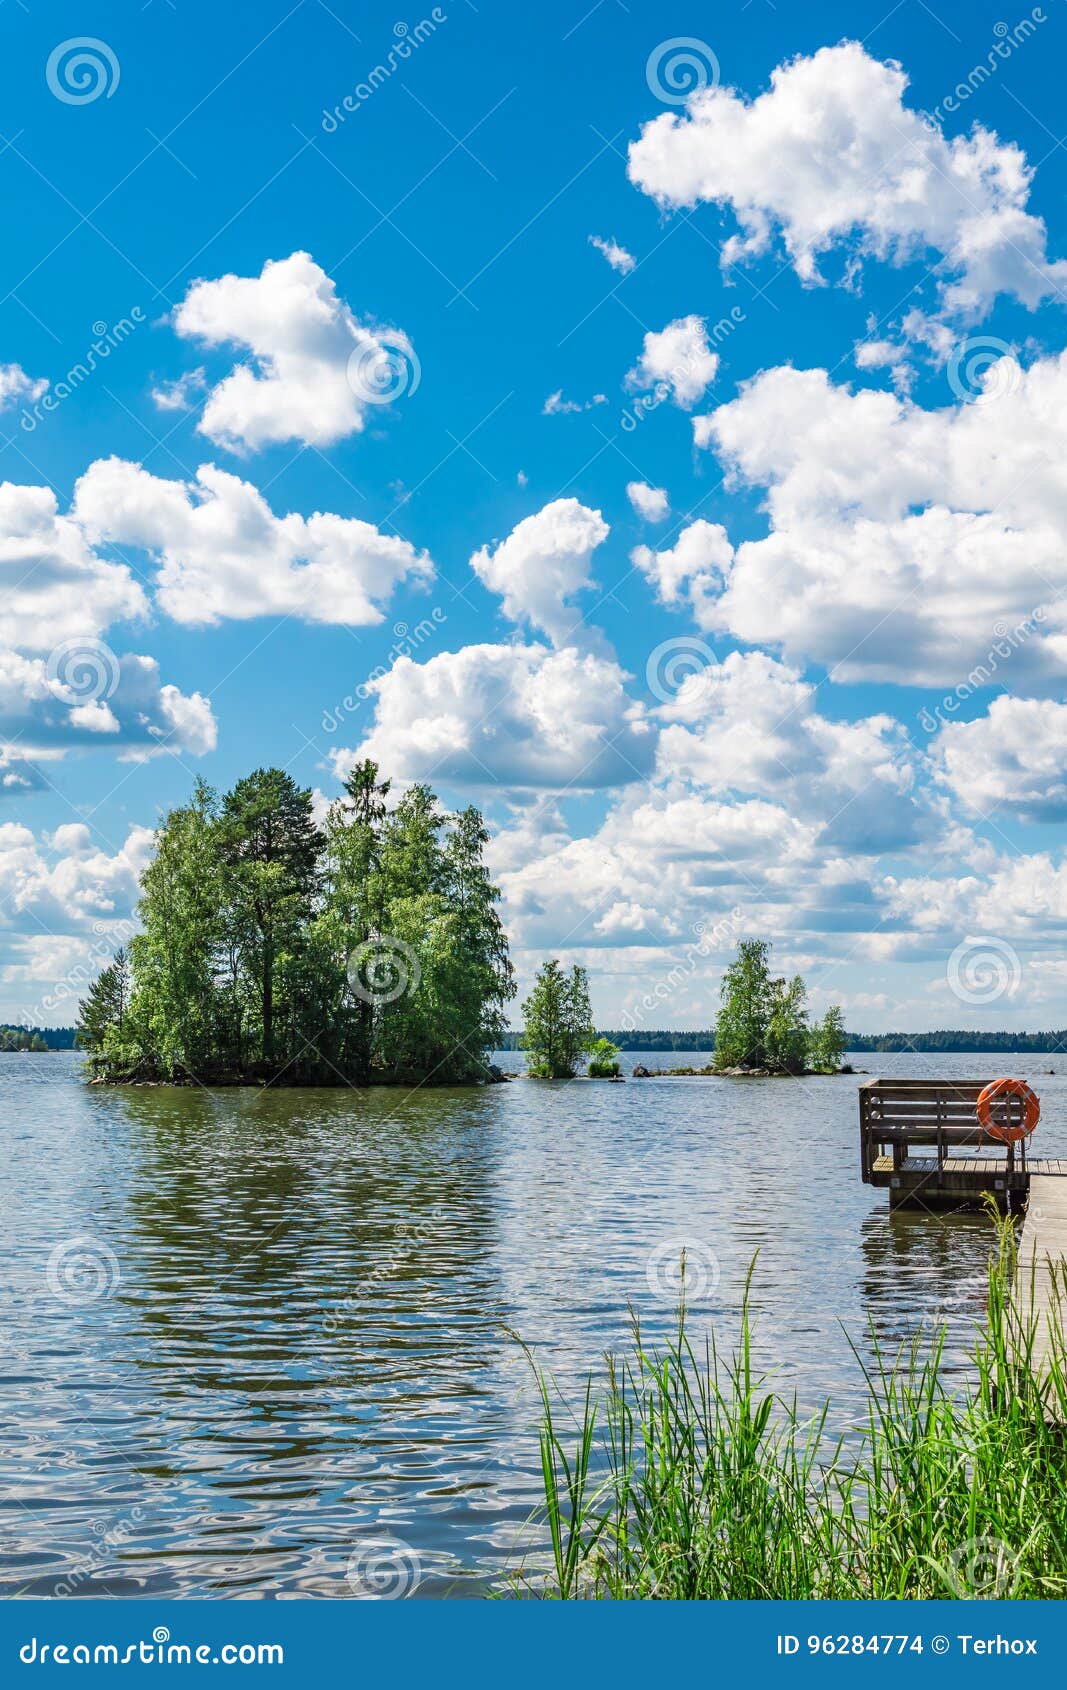 lake pyhajarvi in finland